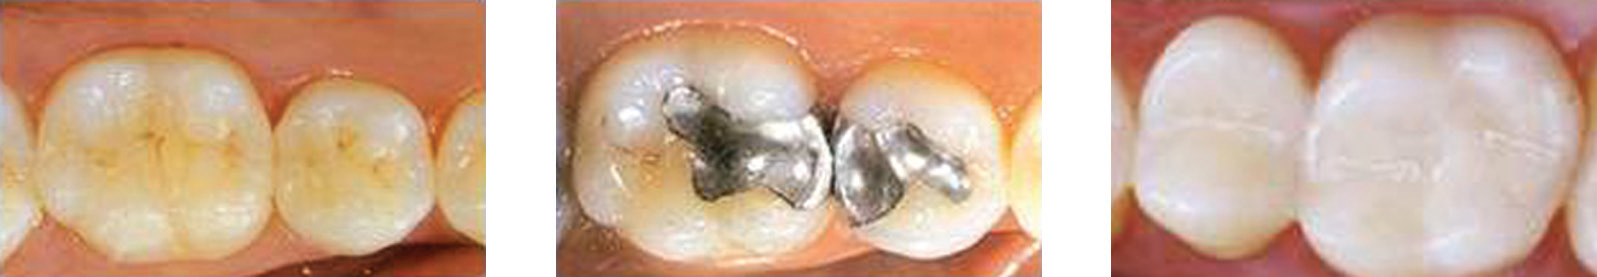 恢复牙科的例子,展示(一)陶瓷镶嵌;(b)汞合金修复;(c)复合材料。